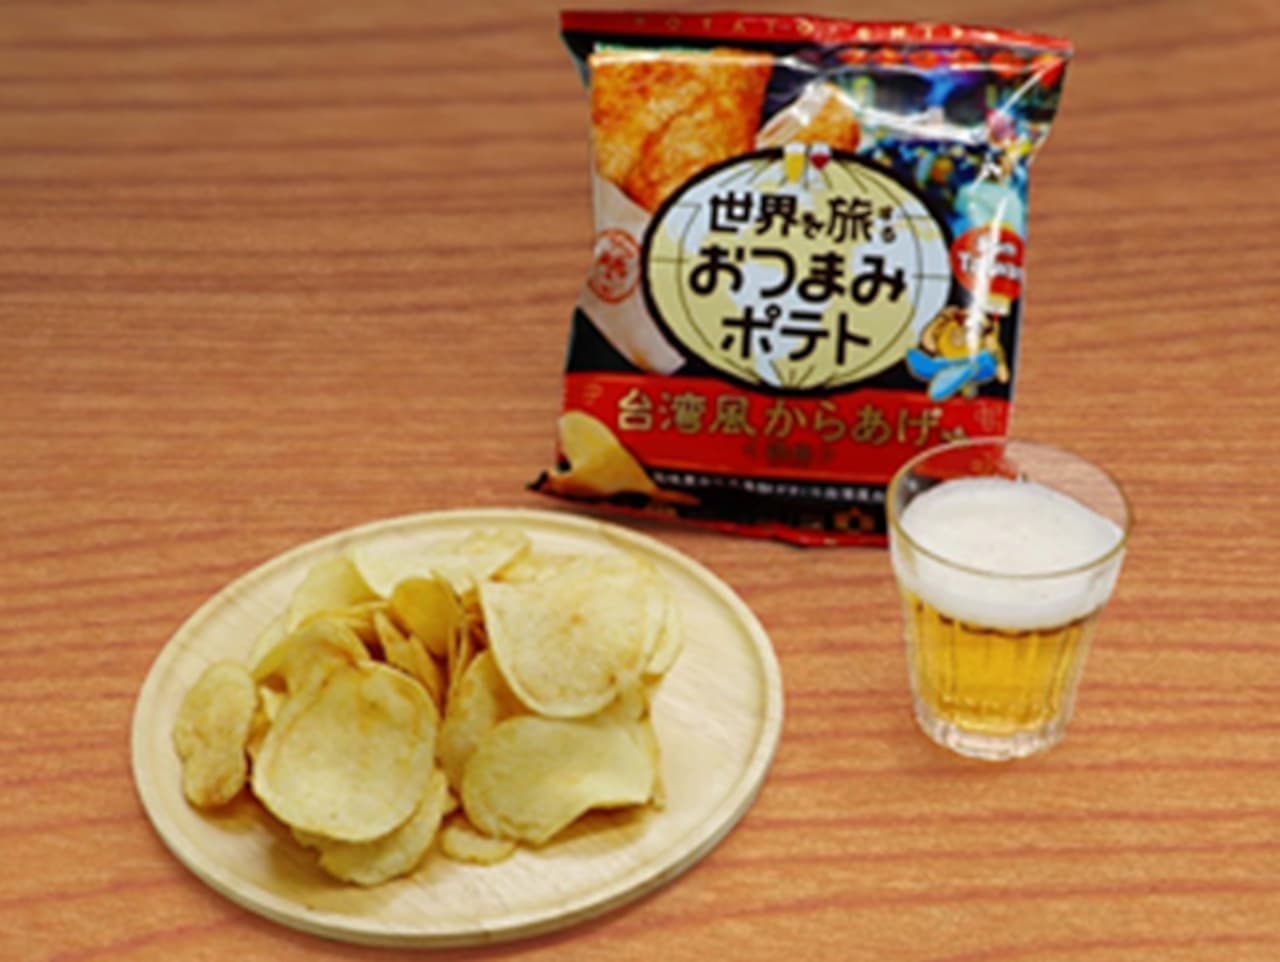 Yamayoshi Seika "Travel around the world, potatoes, Taiwanese-style fried chicken"